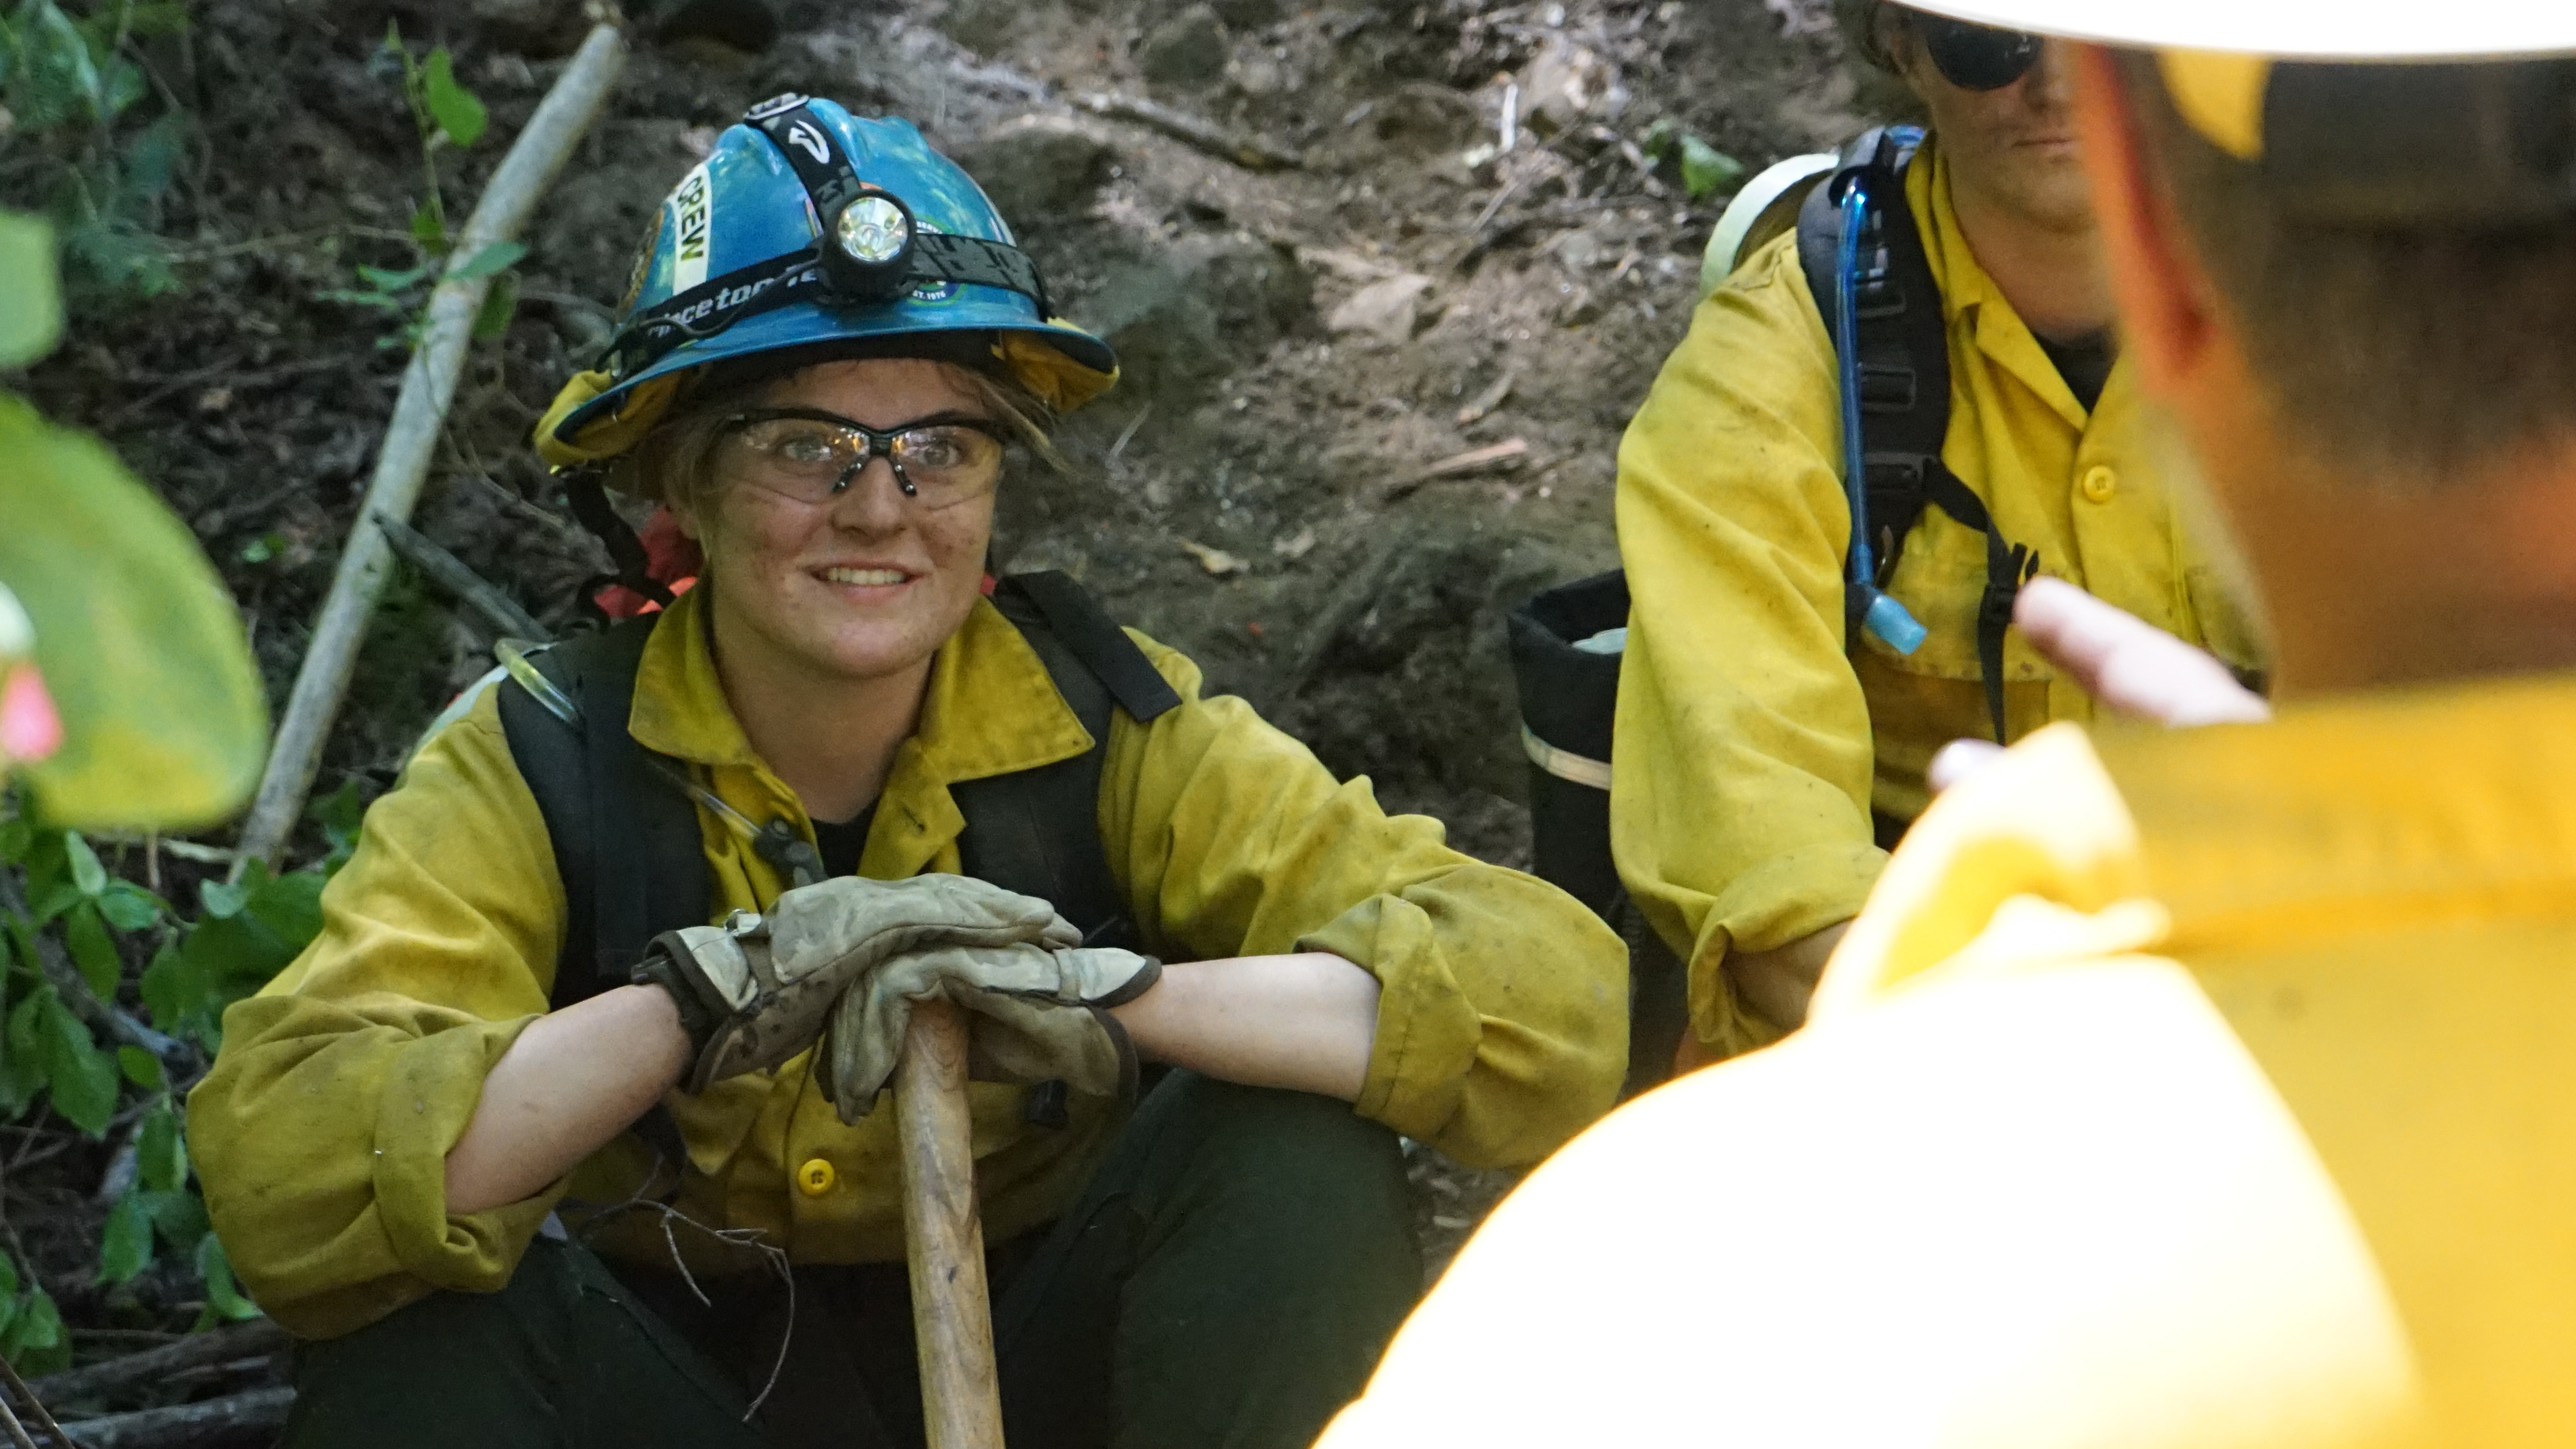 female smiling in fire gear